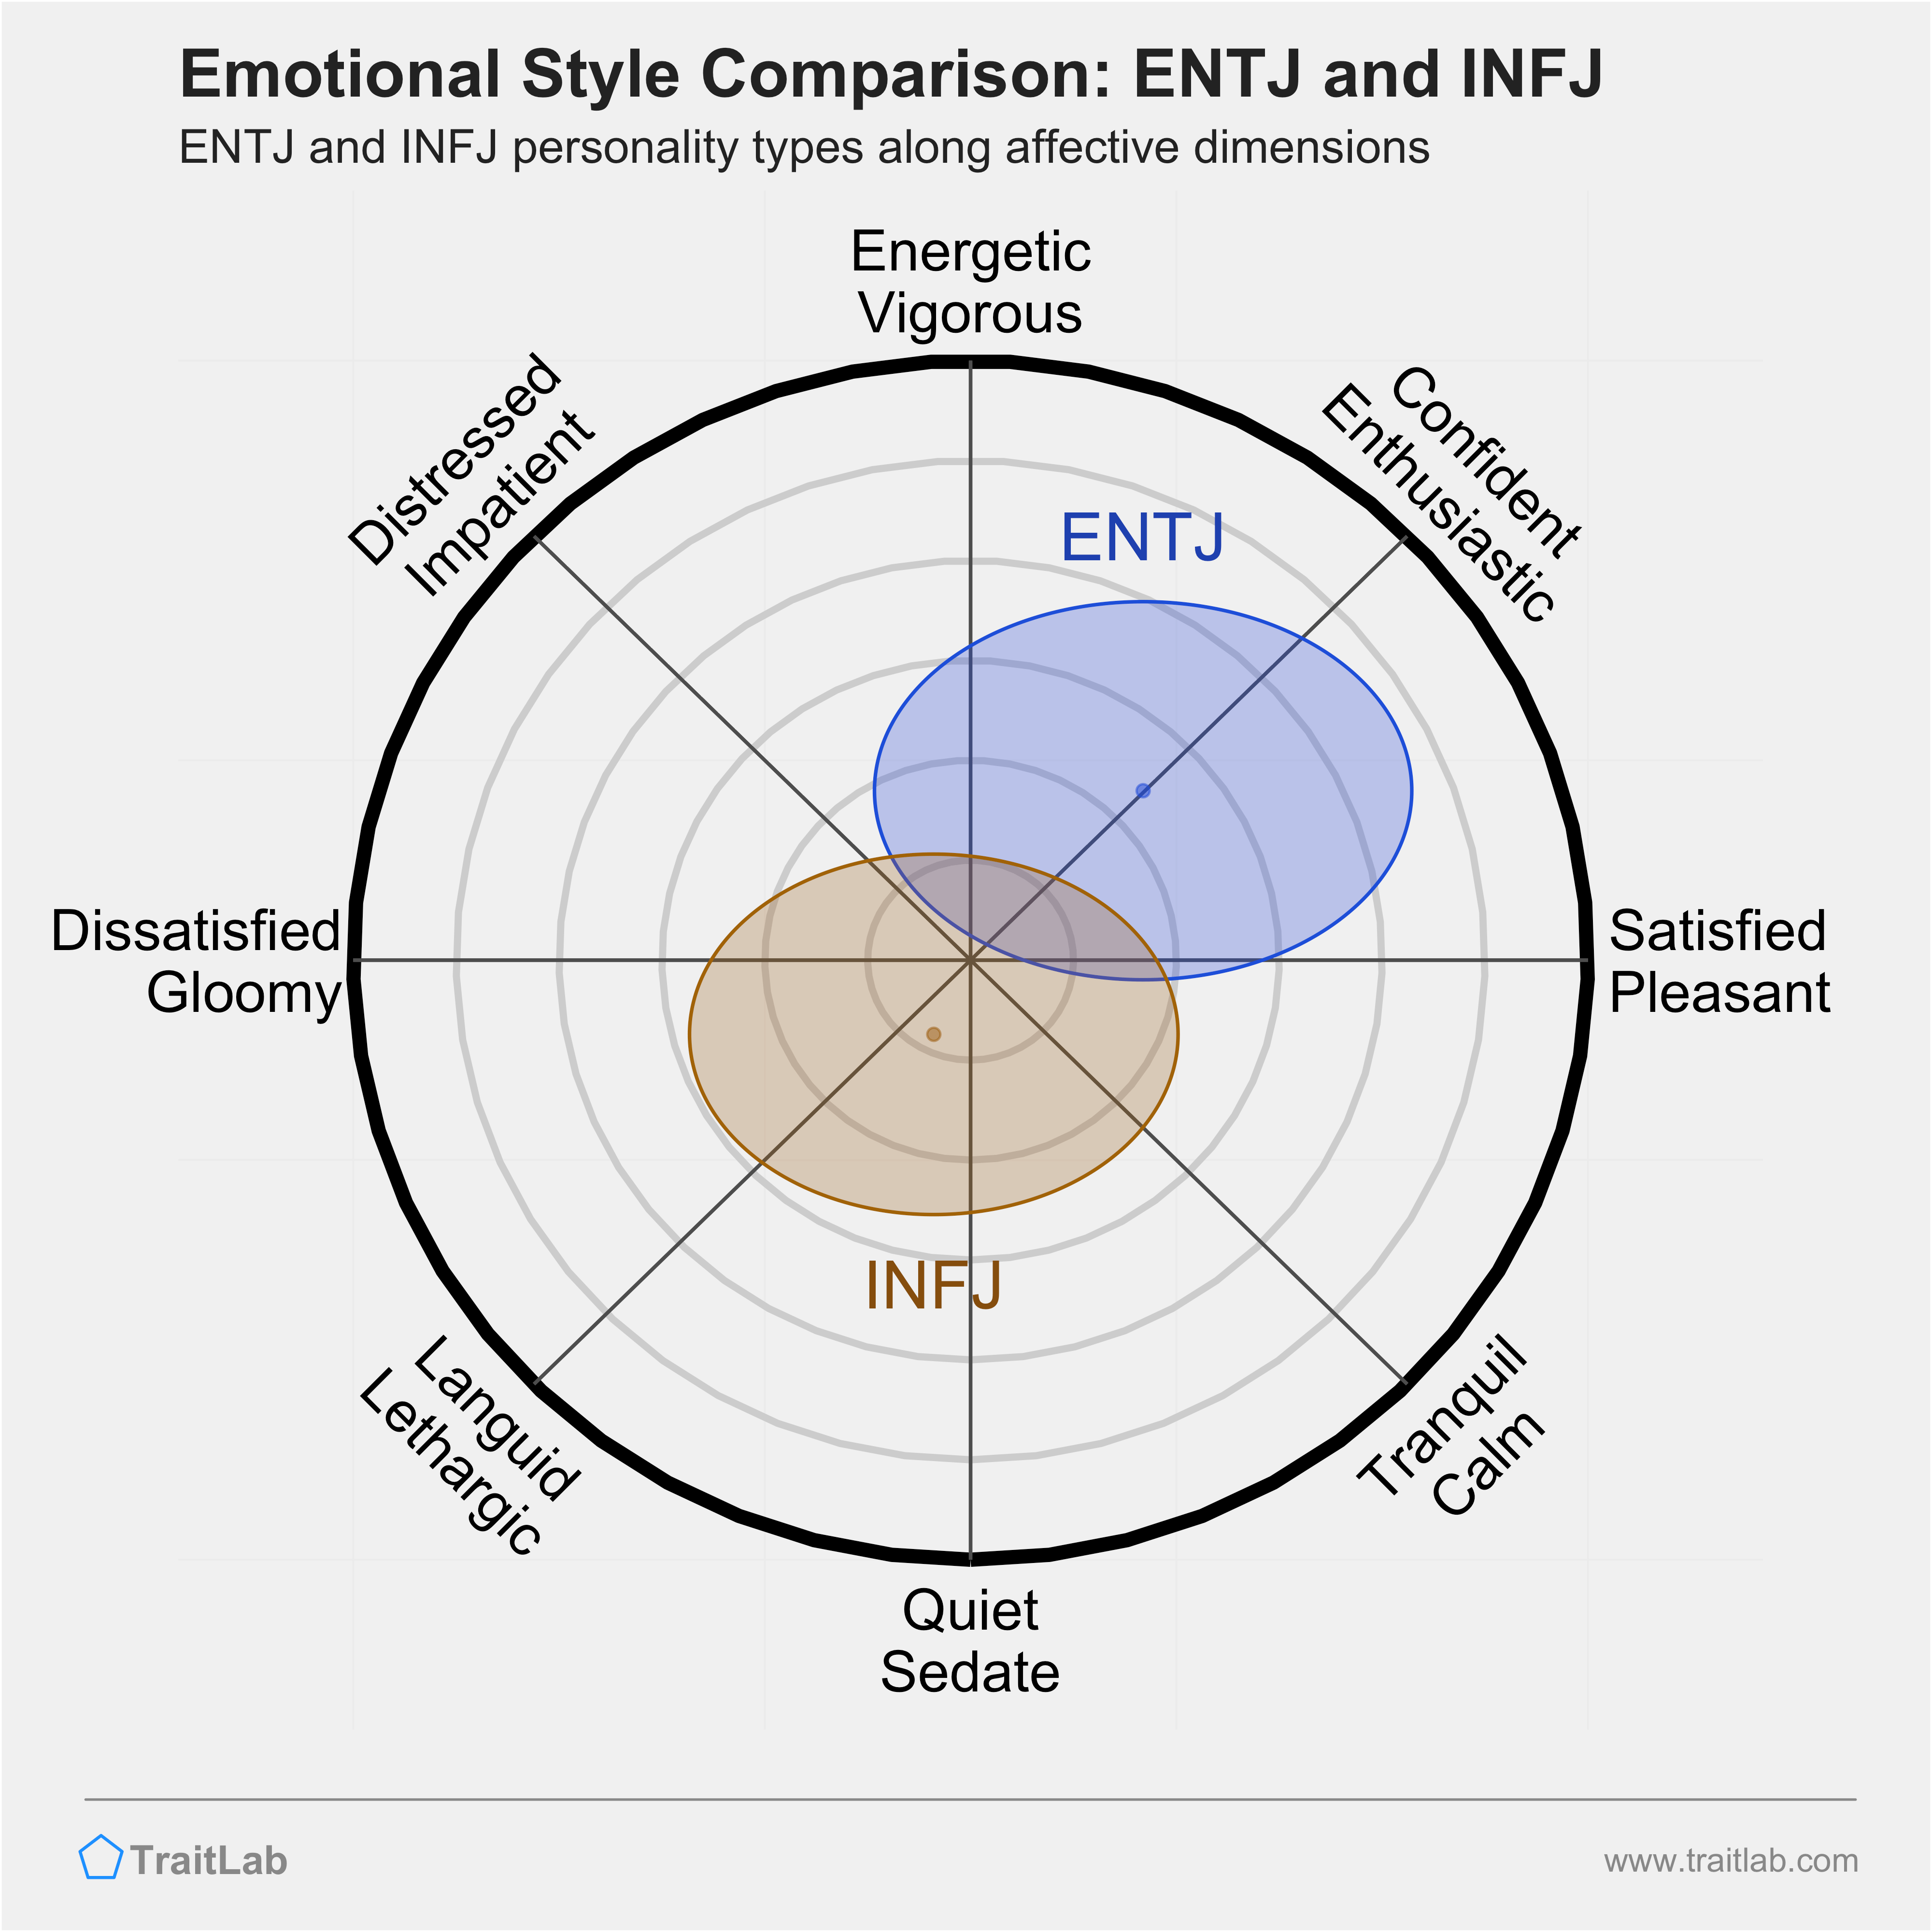 ENTJ and INFJ comparison across emotional (affective) dimensions